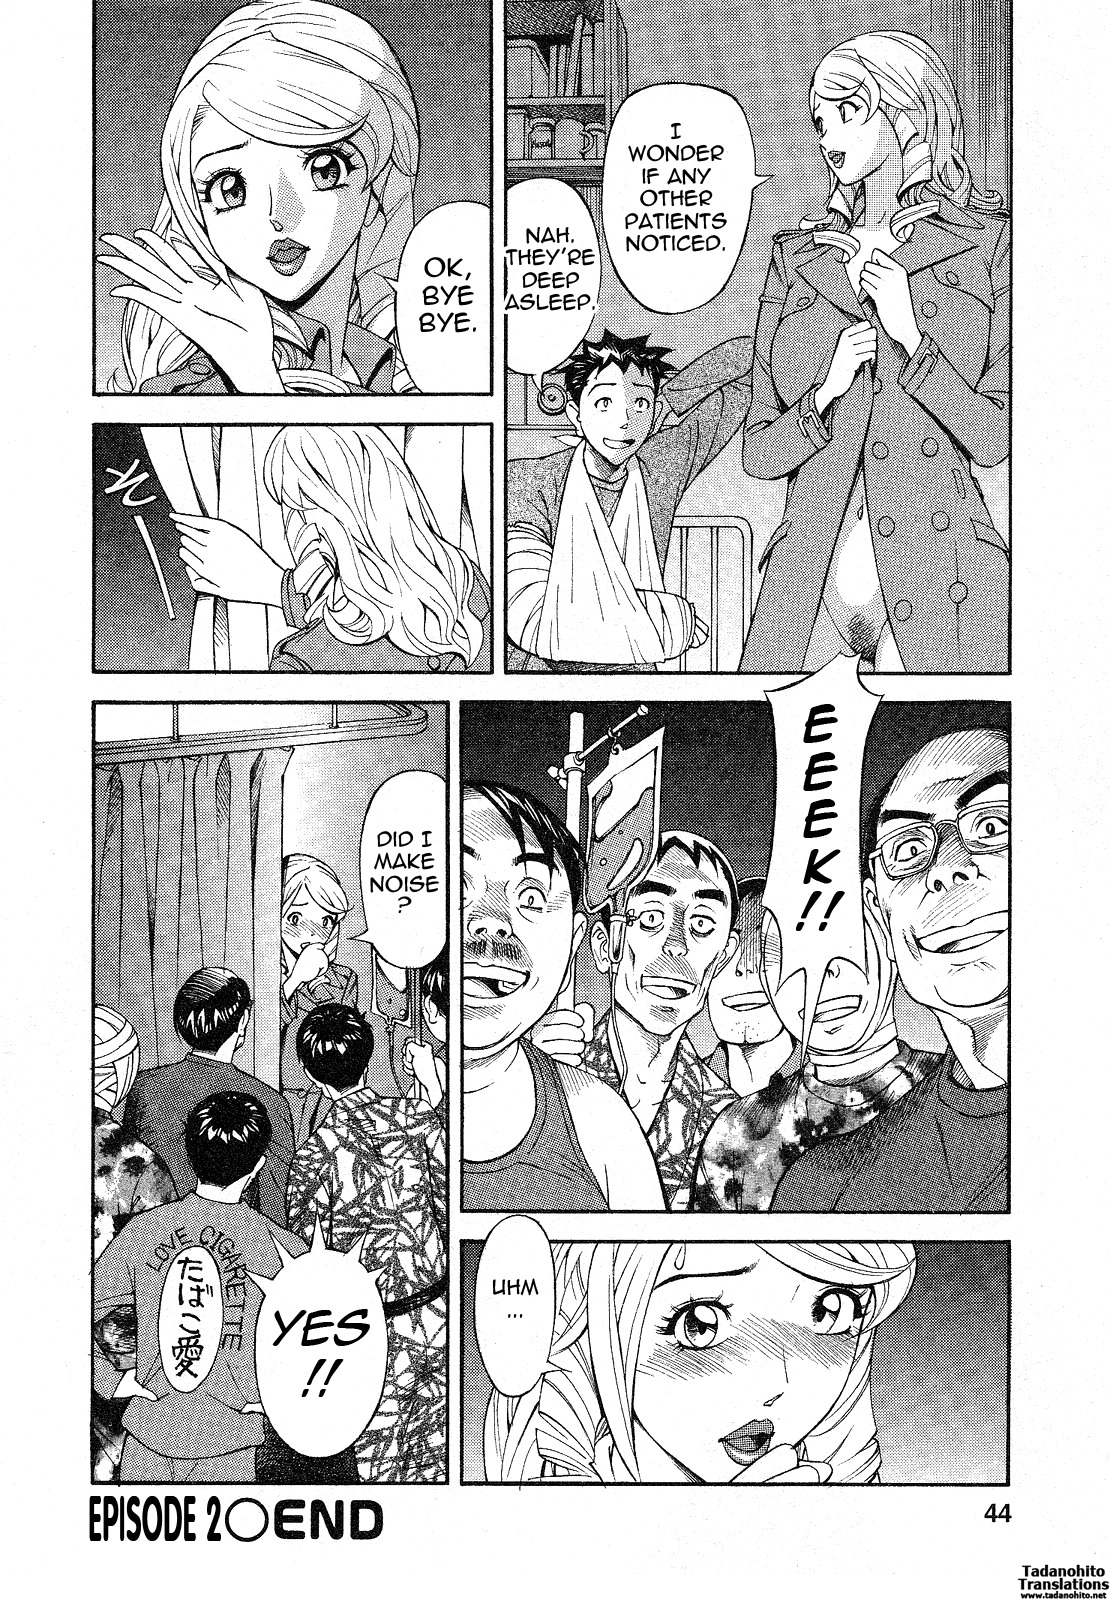 [Hara Shigeyuki] Hottokenaino [English] {Tadanohito} page 44 full